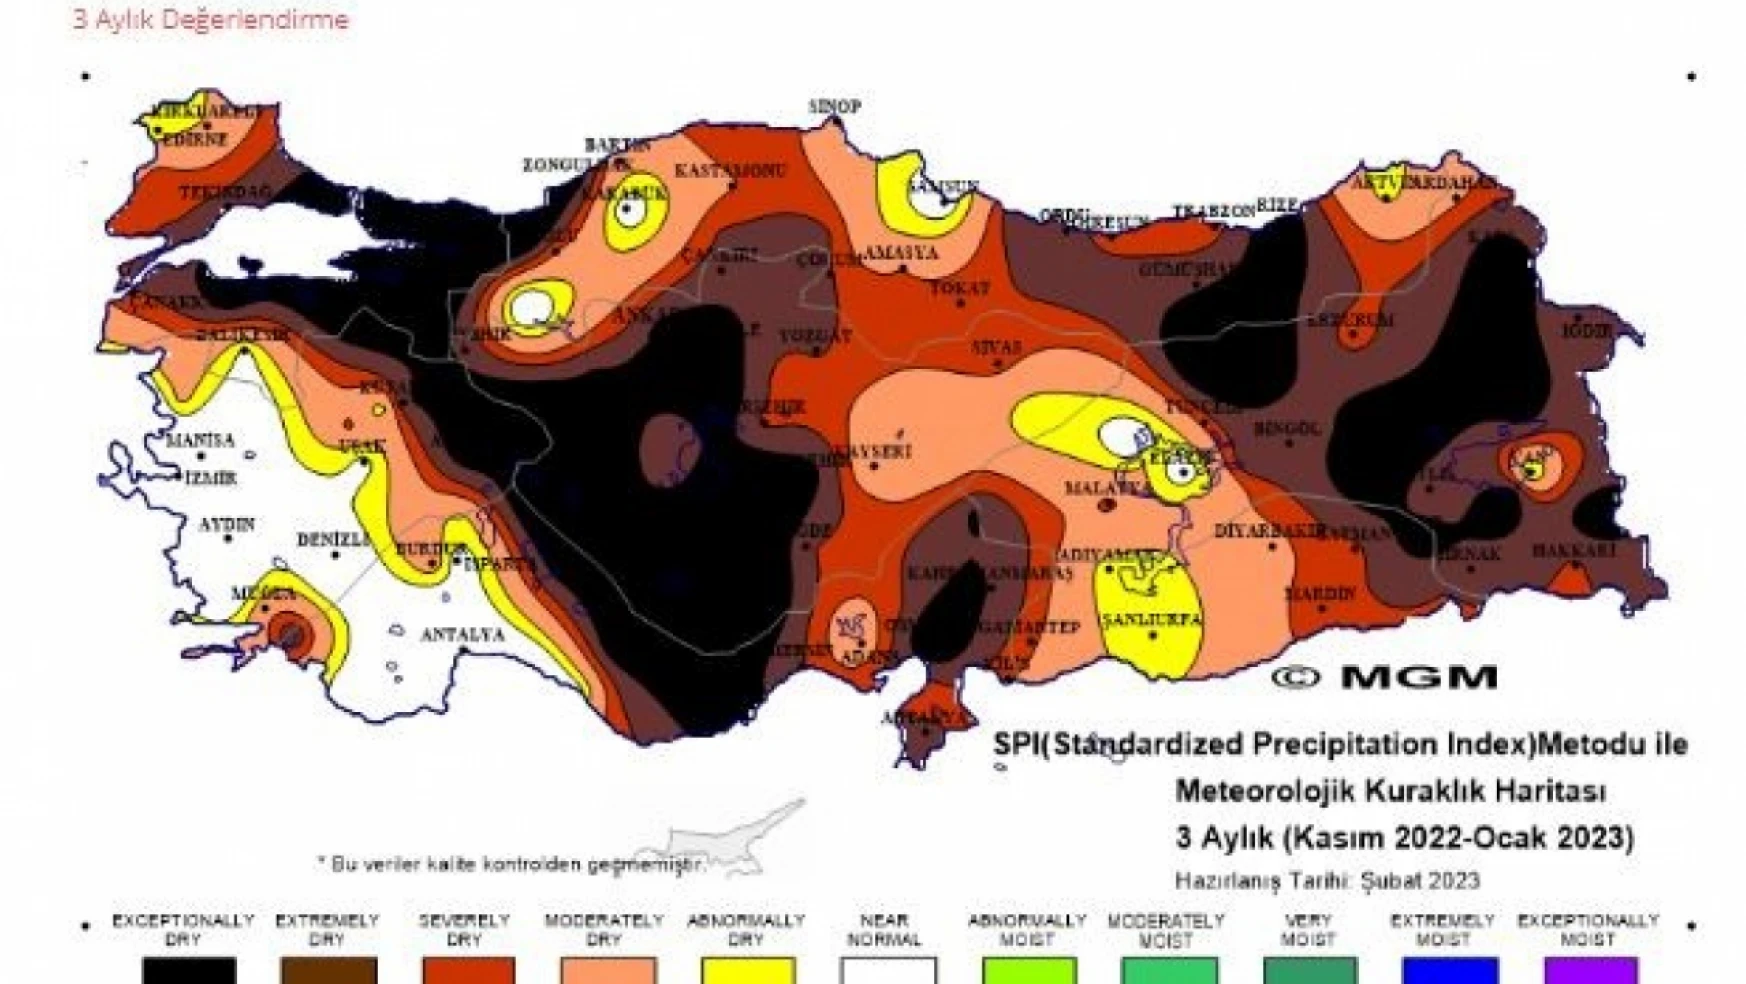 Kuraklık haritası yayınlandı: Konya'yı olağanüstü bir kuraklık mı bekliyor?